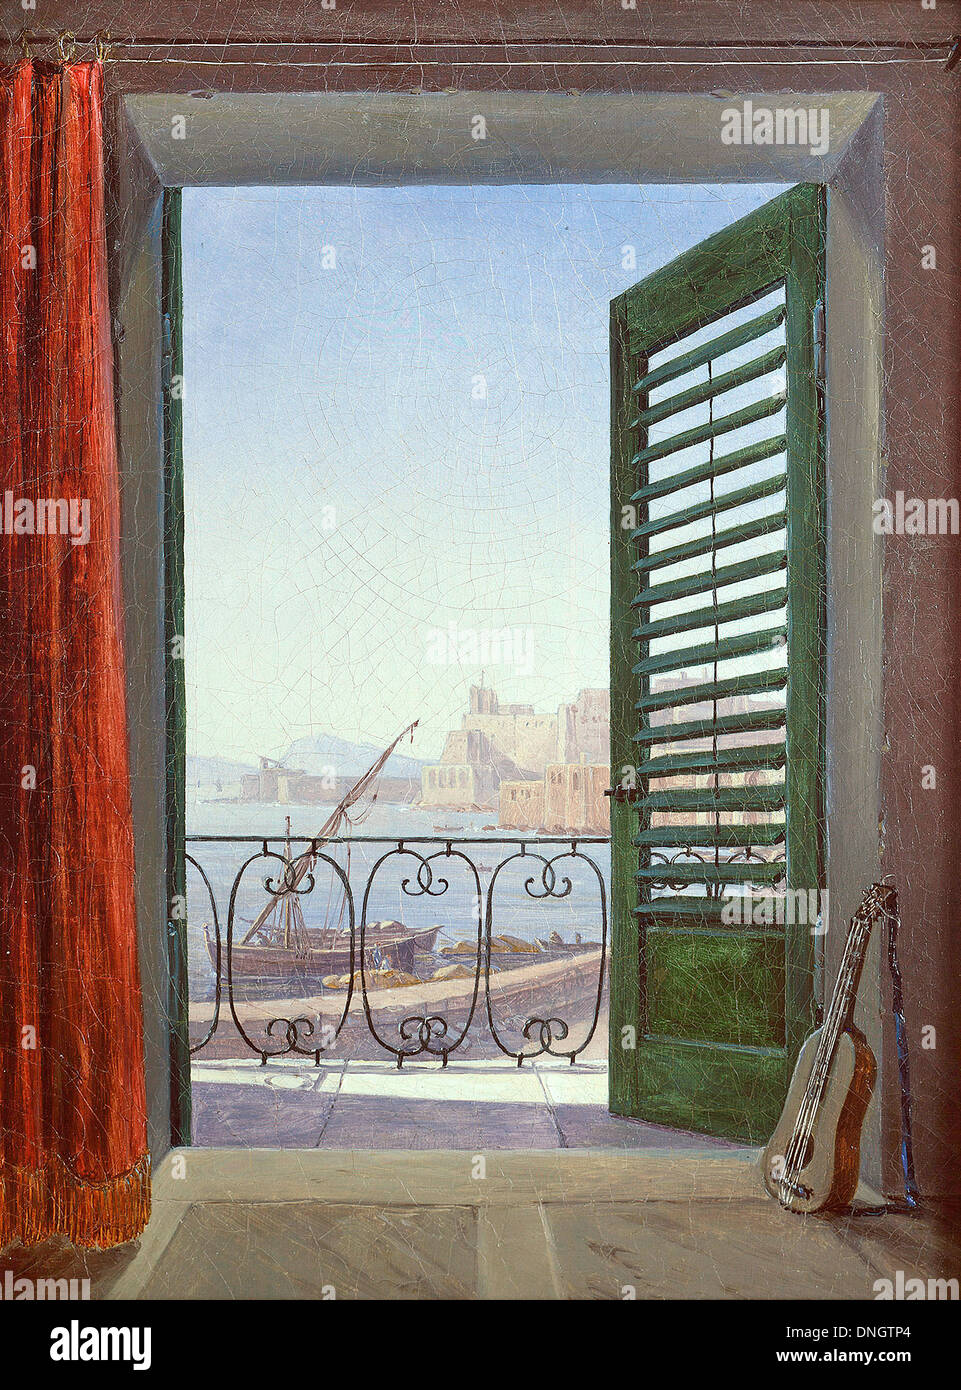 Carl Gustav Carus, Zimmer mit Balkon mit Blick auf die Bucht von Neapel. Um 1830. Öl auf Leinwand. Alte Nationalgalerie, Berlin Stockfoto